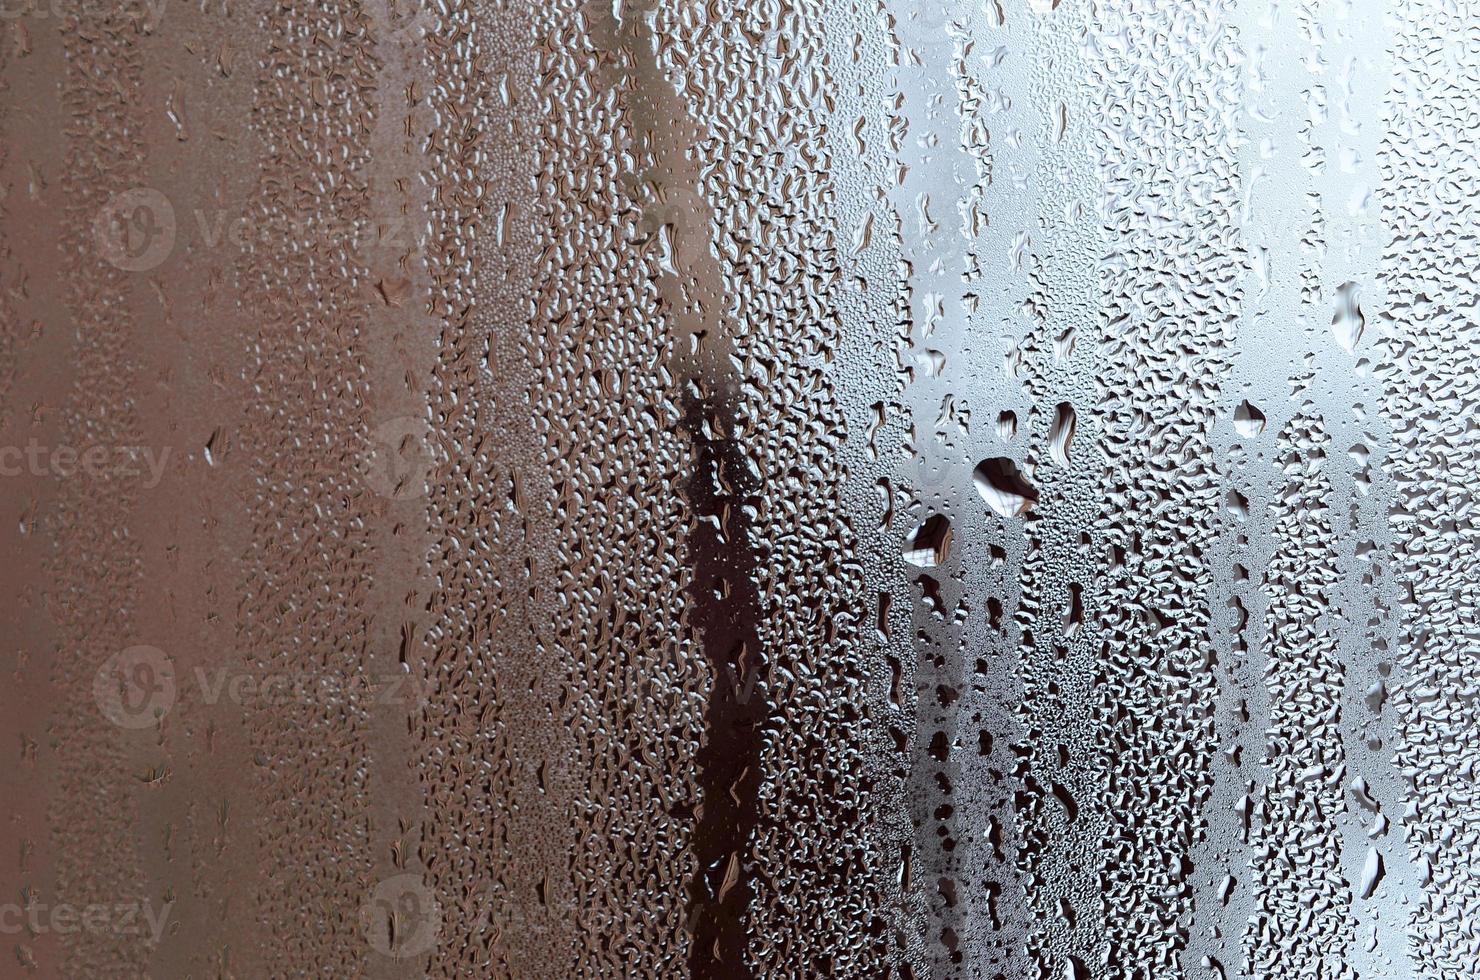 textur av en släppa av regn på en glas våt transparent bakgrund. tonad i grå Färg foto